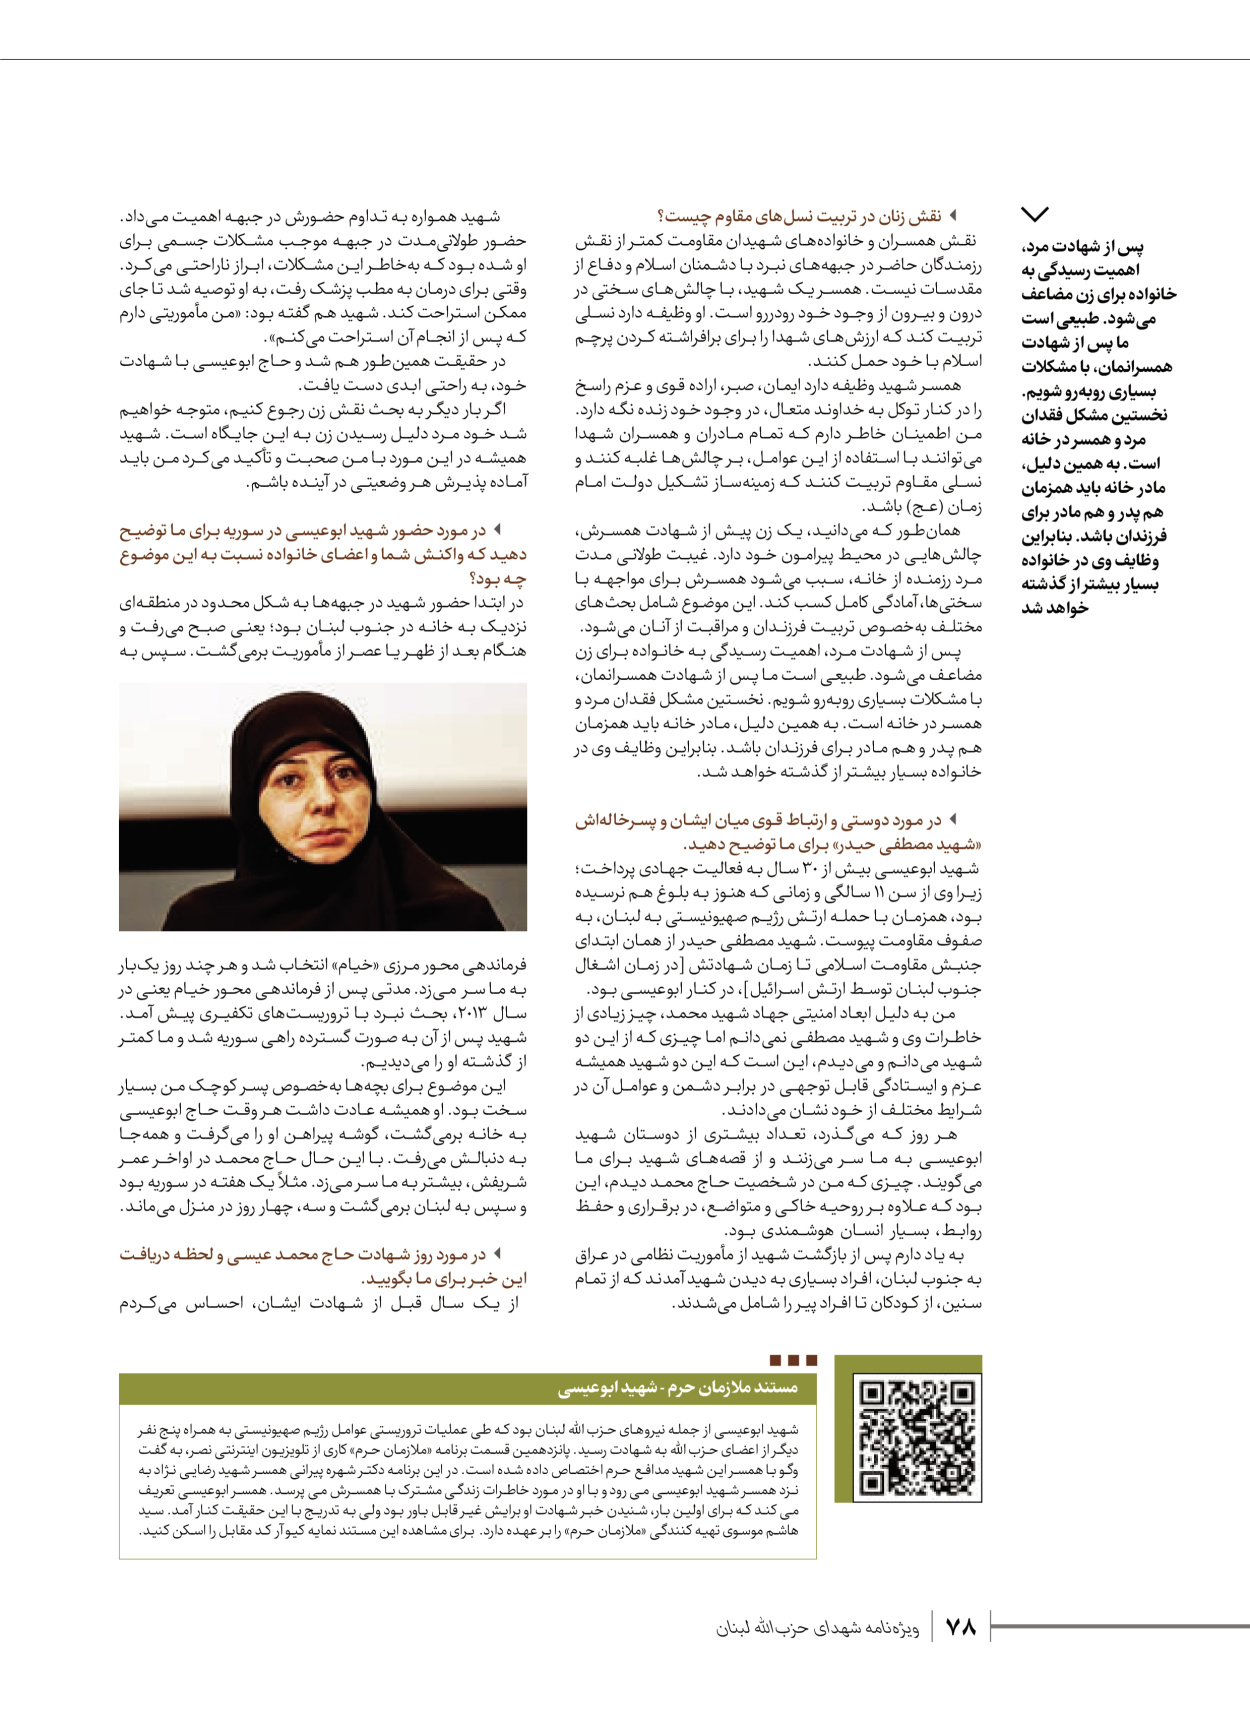 روزنامه ایران - ویژه نامه شهدای قدس ۶ - ۲۵ فروردین ۱۴۰۳ - صفحه ۷۸